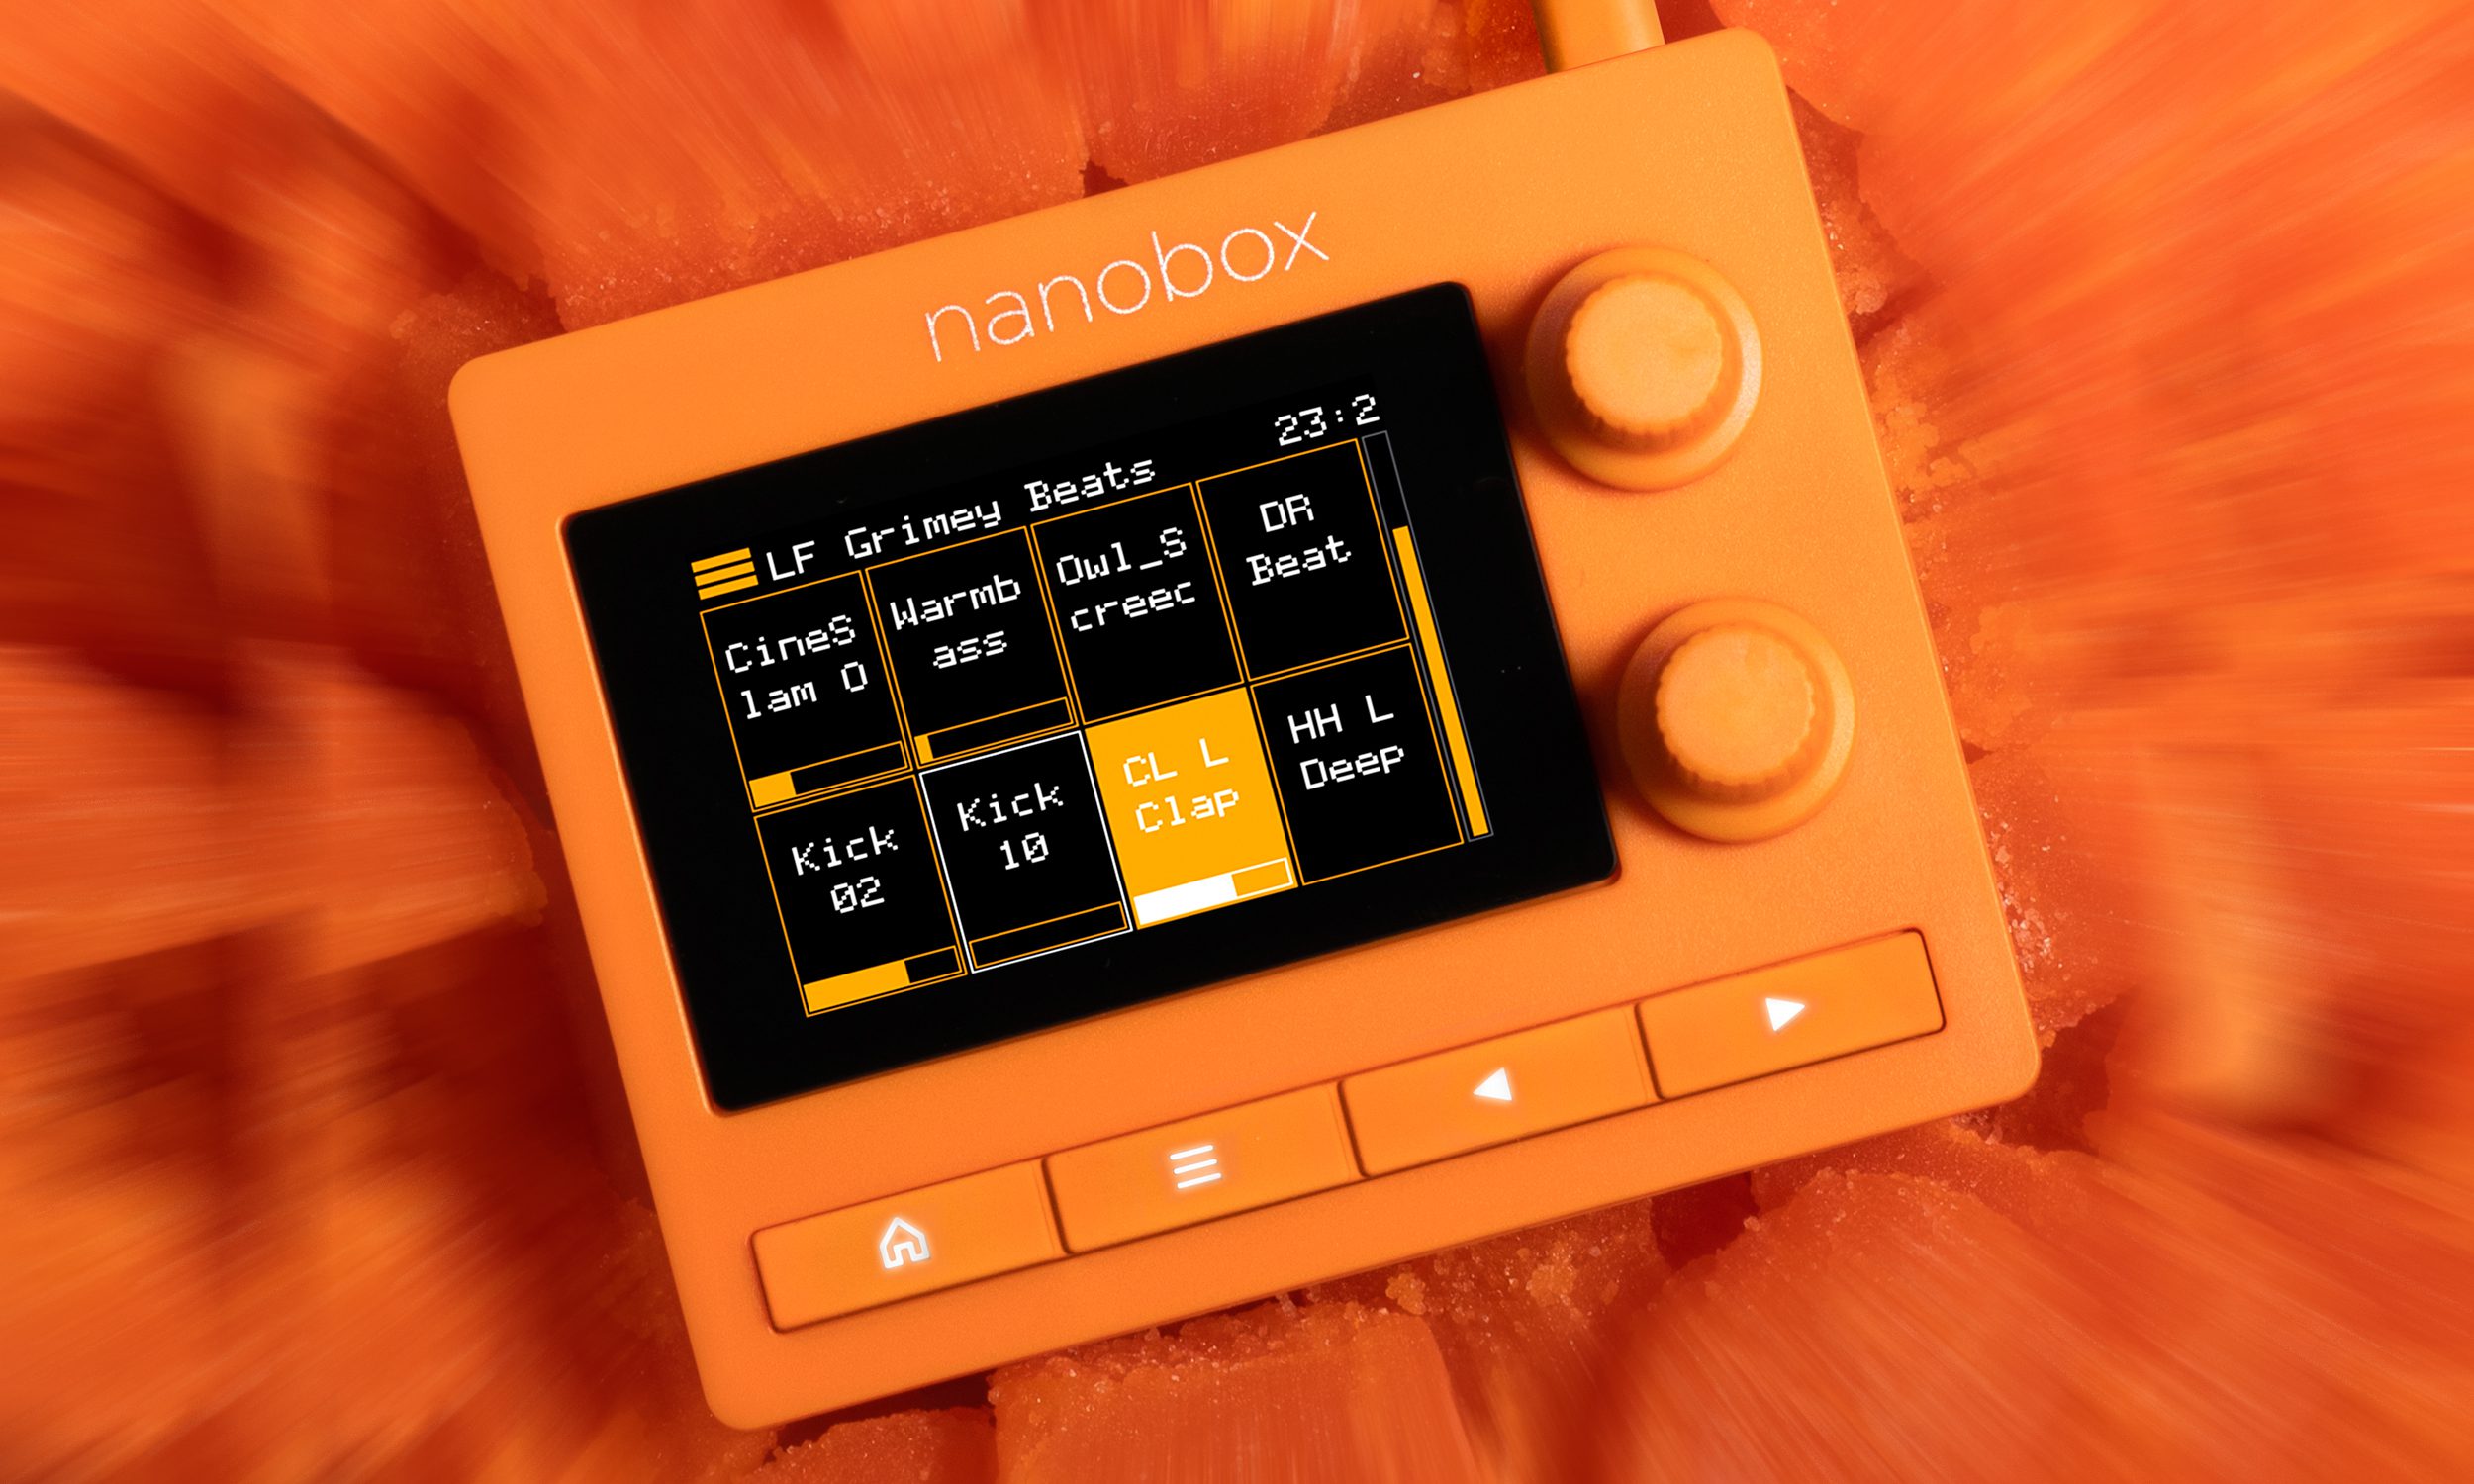 1010music nanobox tangerine streaming sampler aufmacher